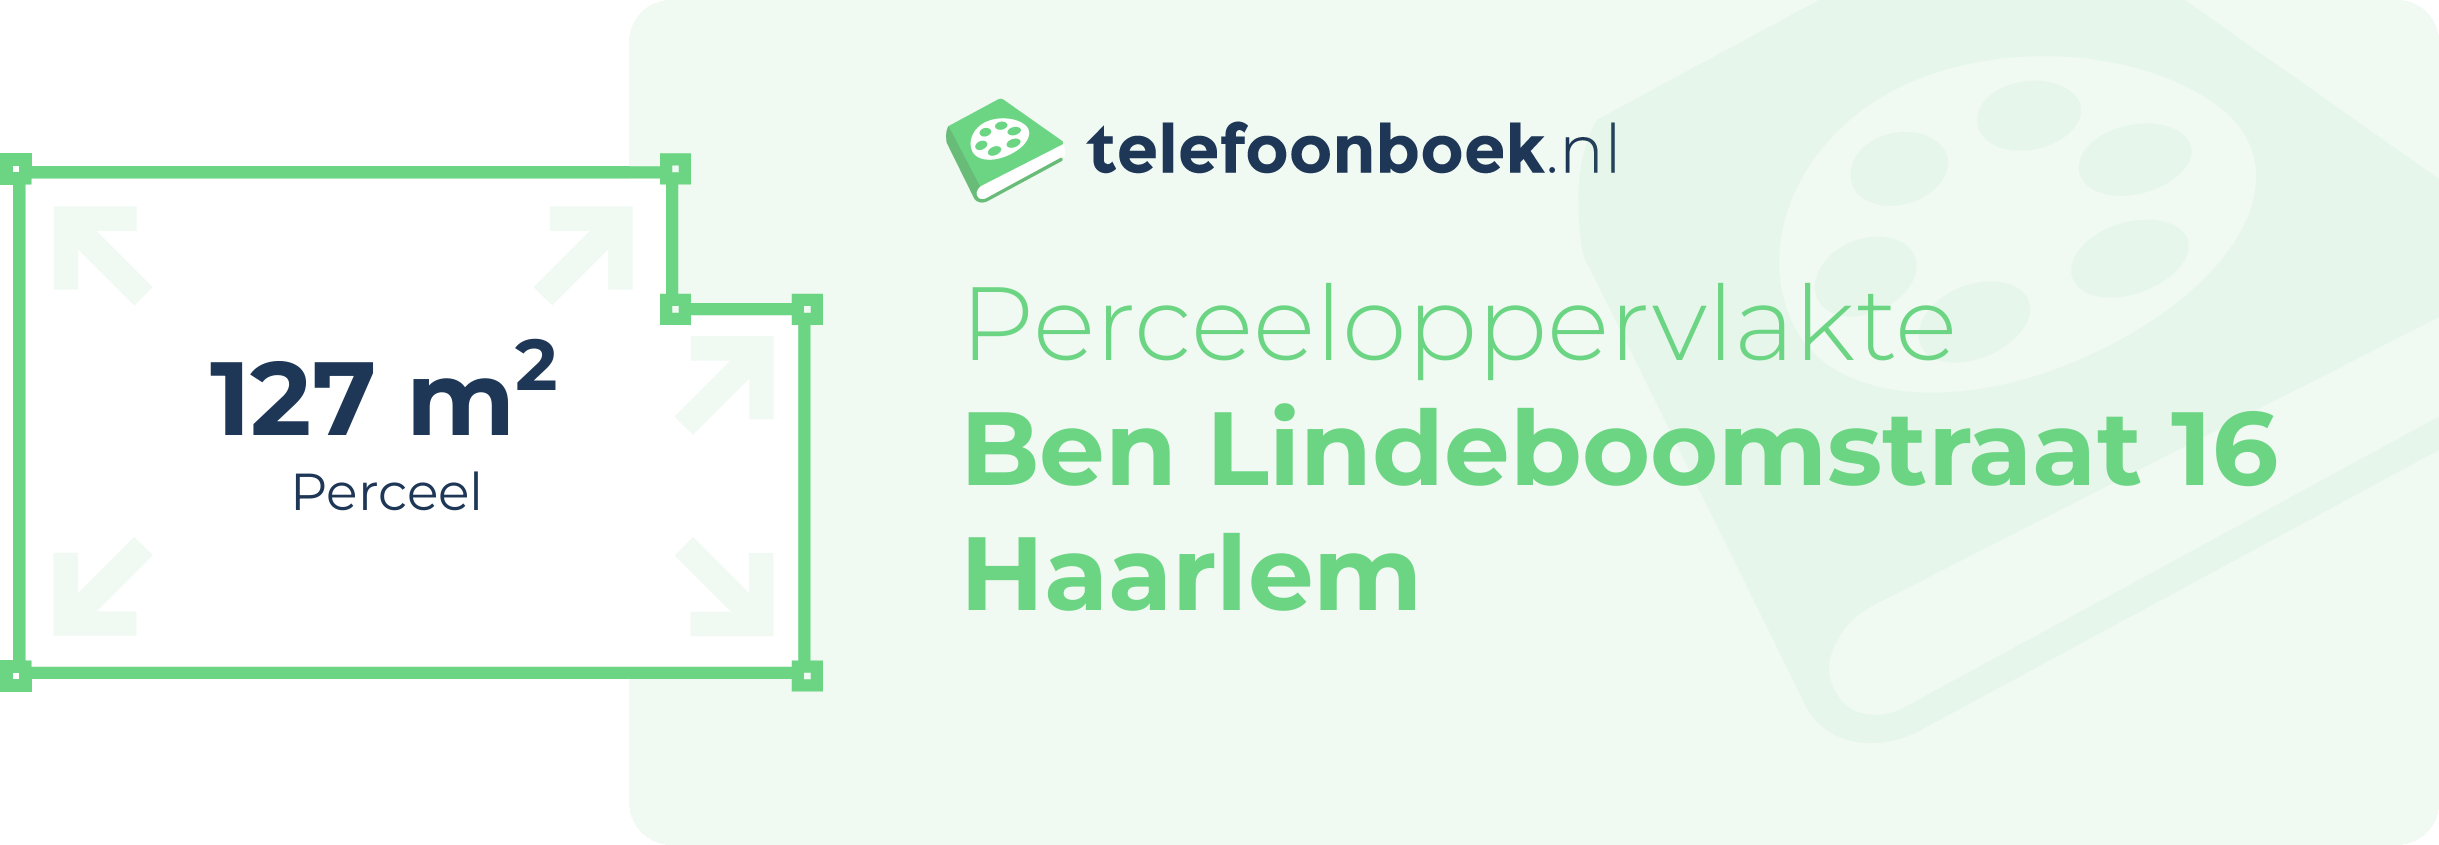 Perceeloppervlakte Ben Lindeboomstraat 16 Haarlem